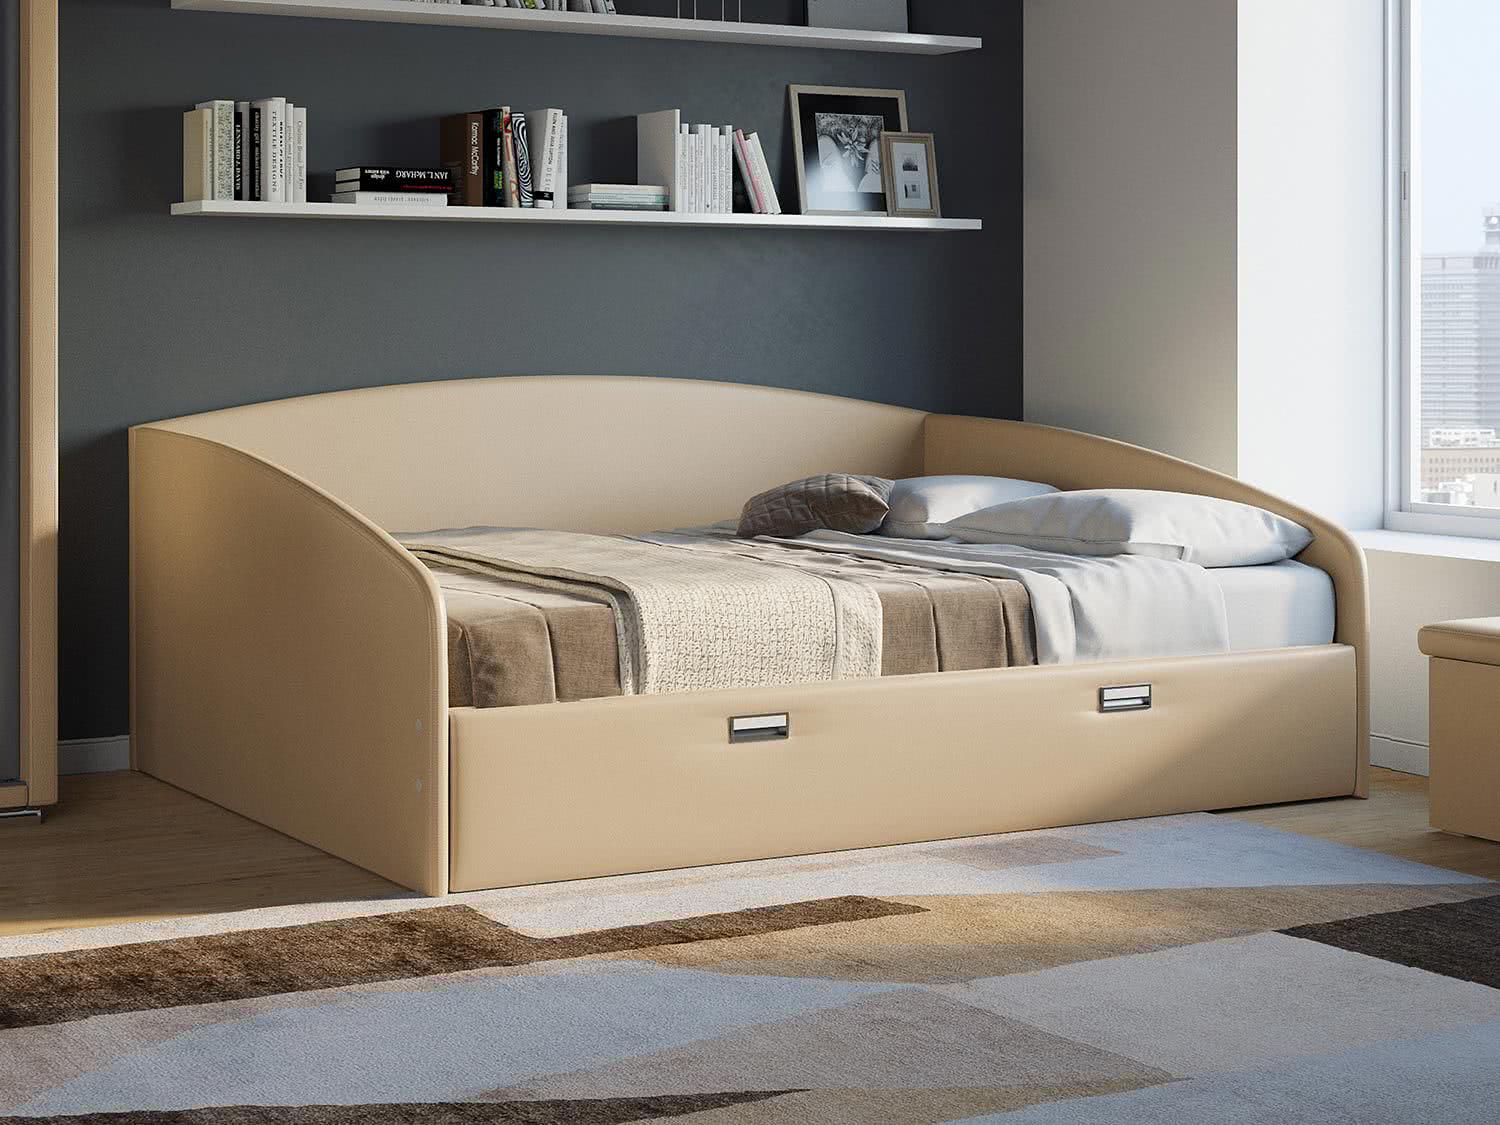 Купить Кровать Орматек Bono (экокожа), бежевый бежевый недорого в интернет-магазине